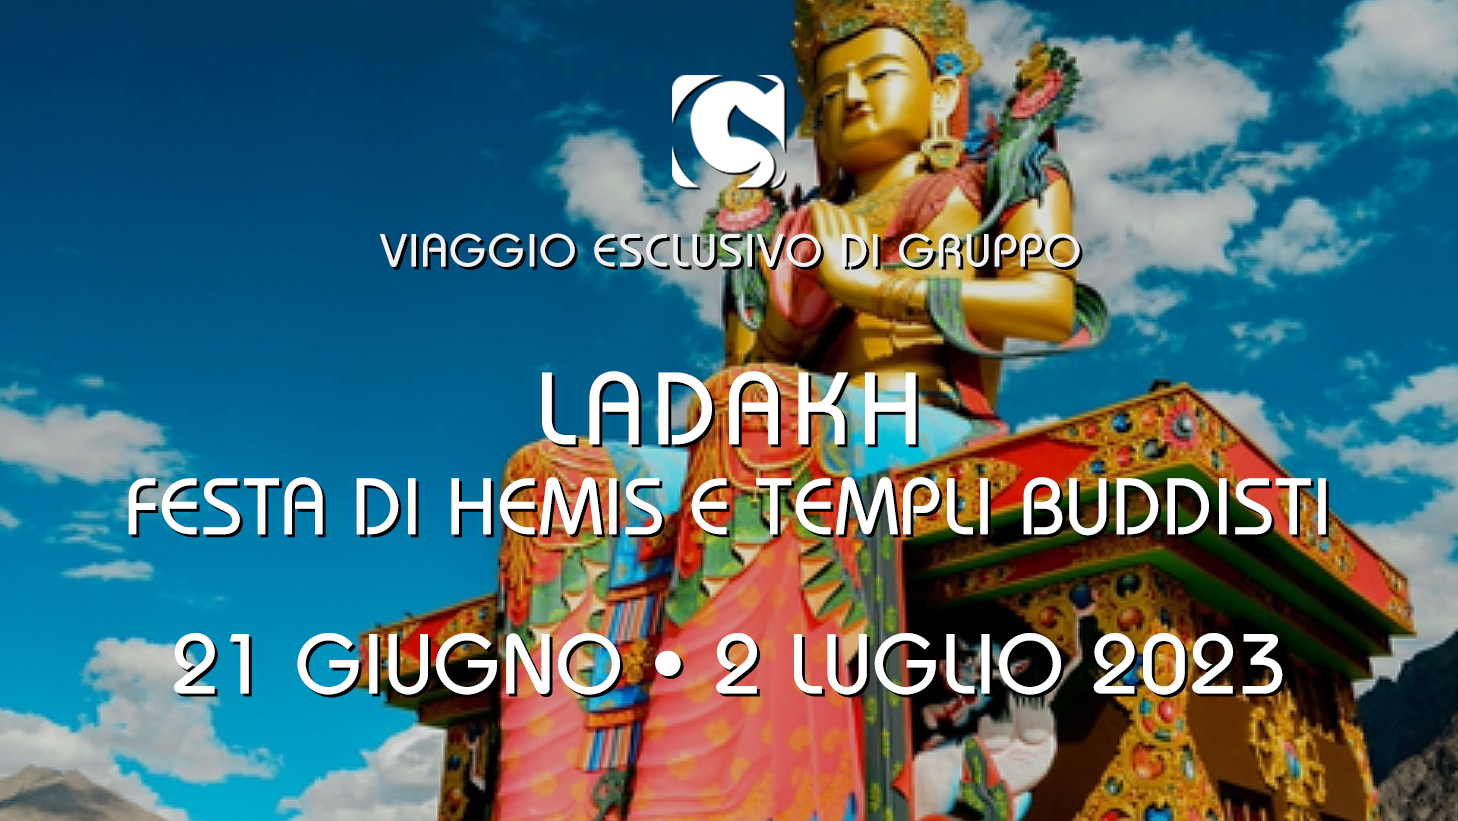 LADAKH 2023 - Festa di Hemis e Templi buddisti